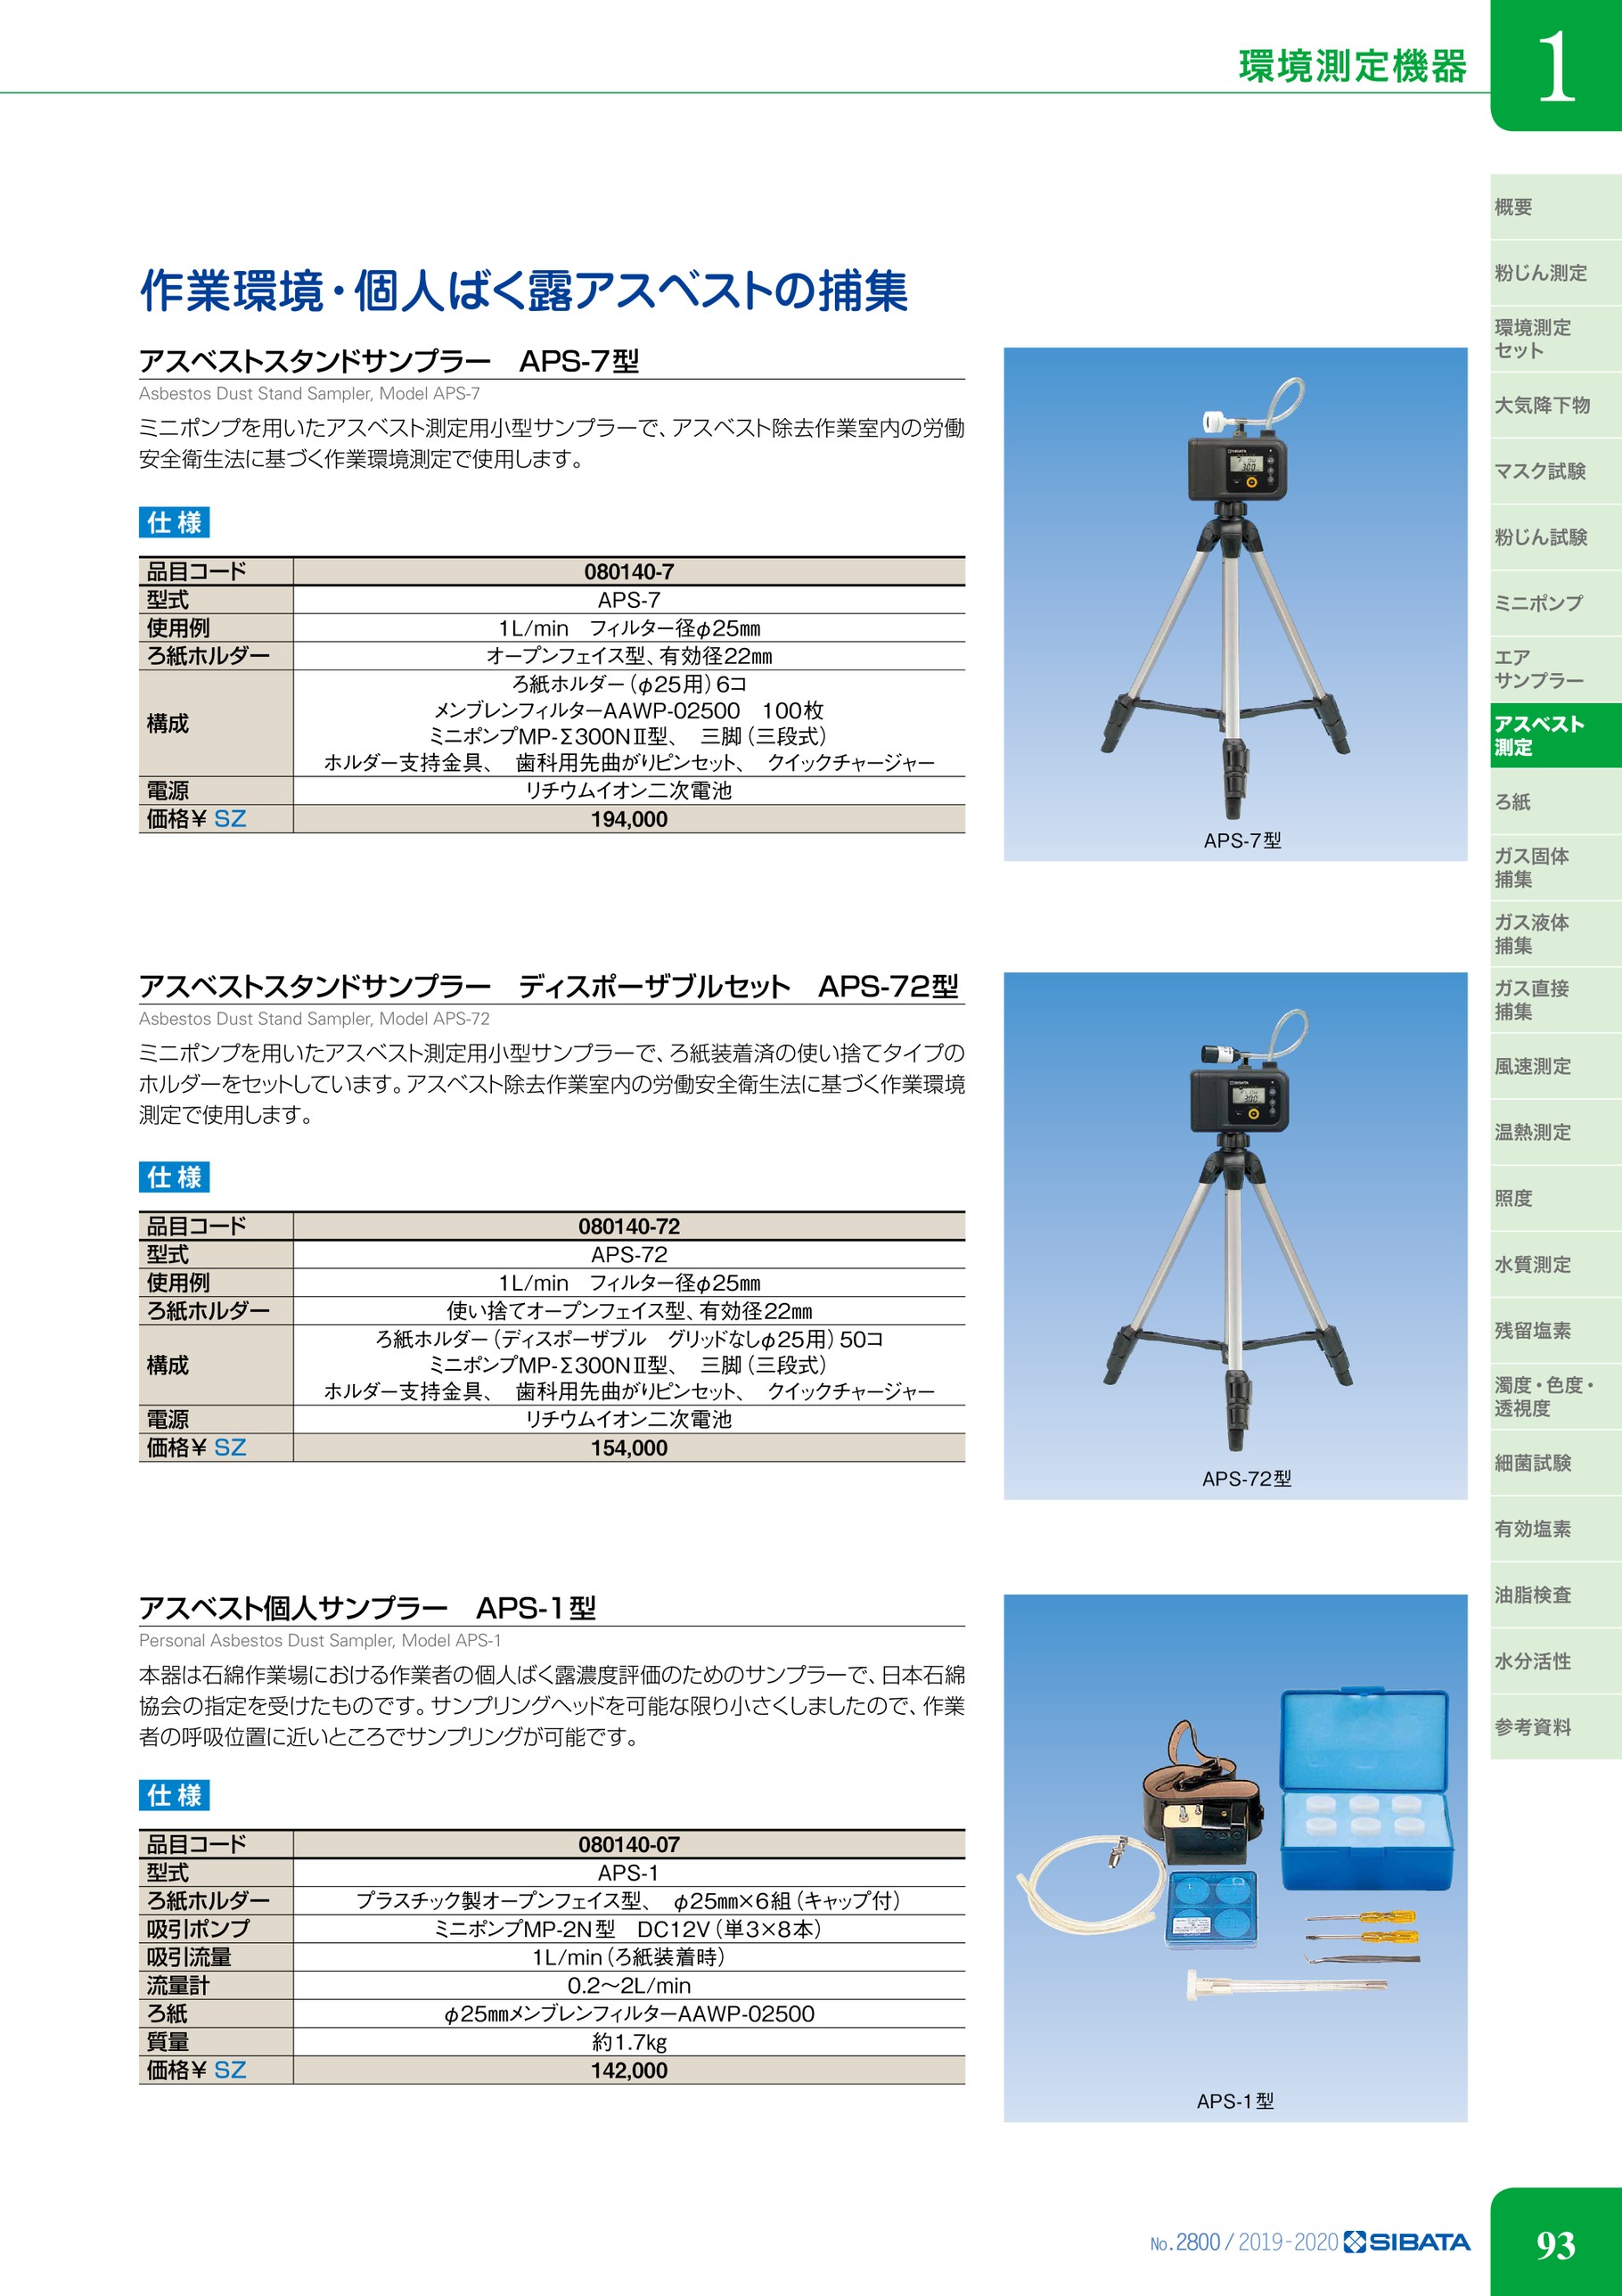 柴田科学 ミニポンプ MP-Σ500NII型 080860-504